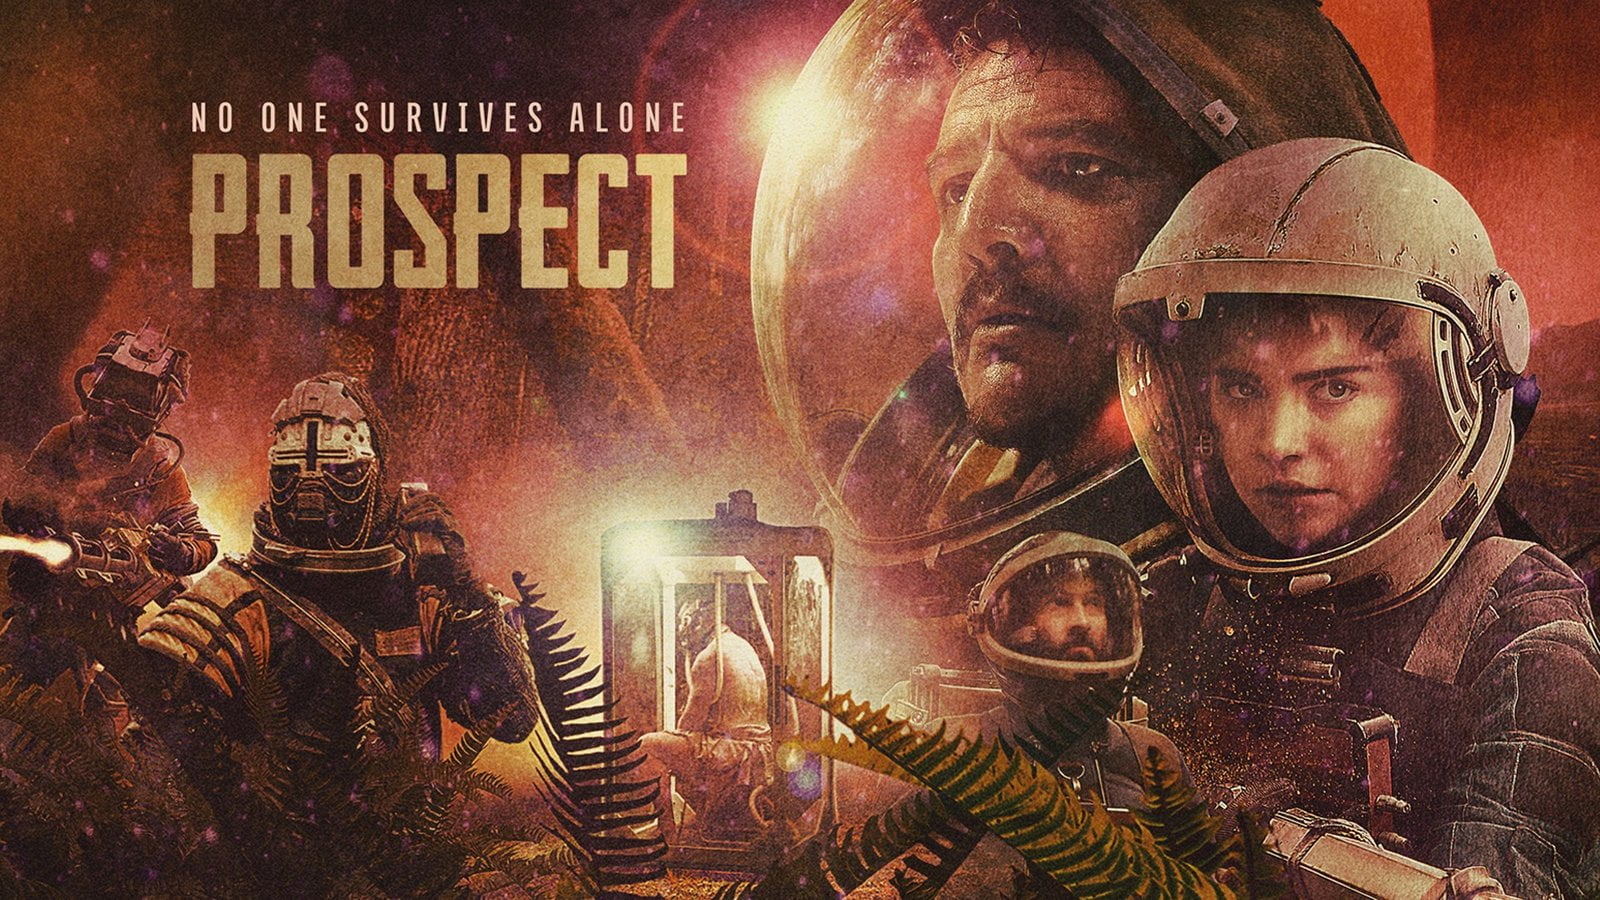 . Recensione di Prospect un film di fantascienza senza i soliti cliché. - 04/08/2020